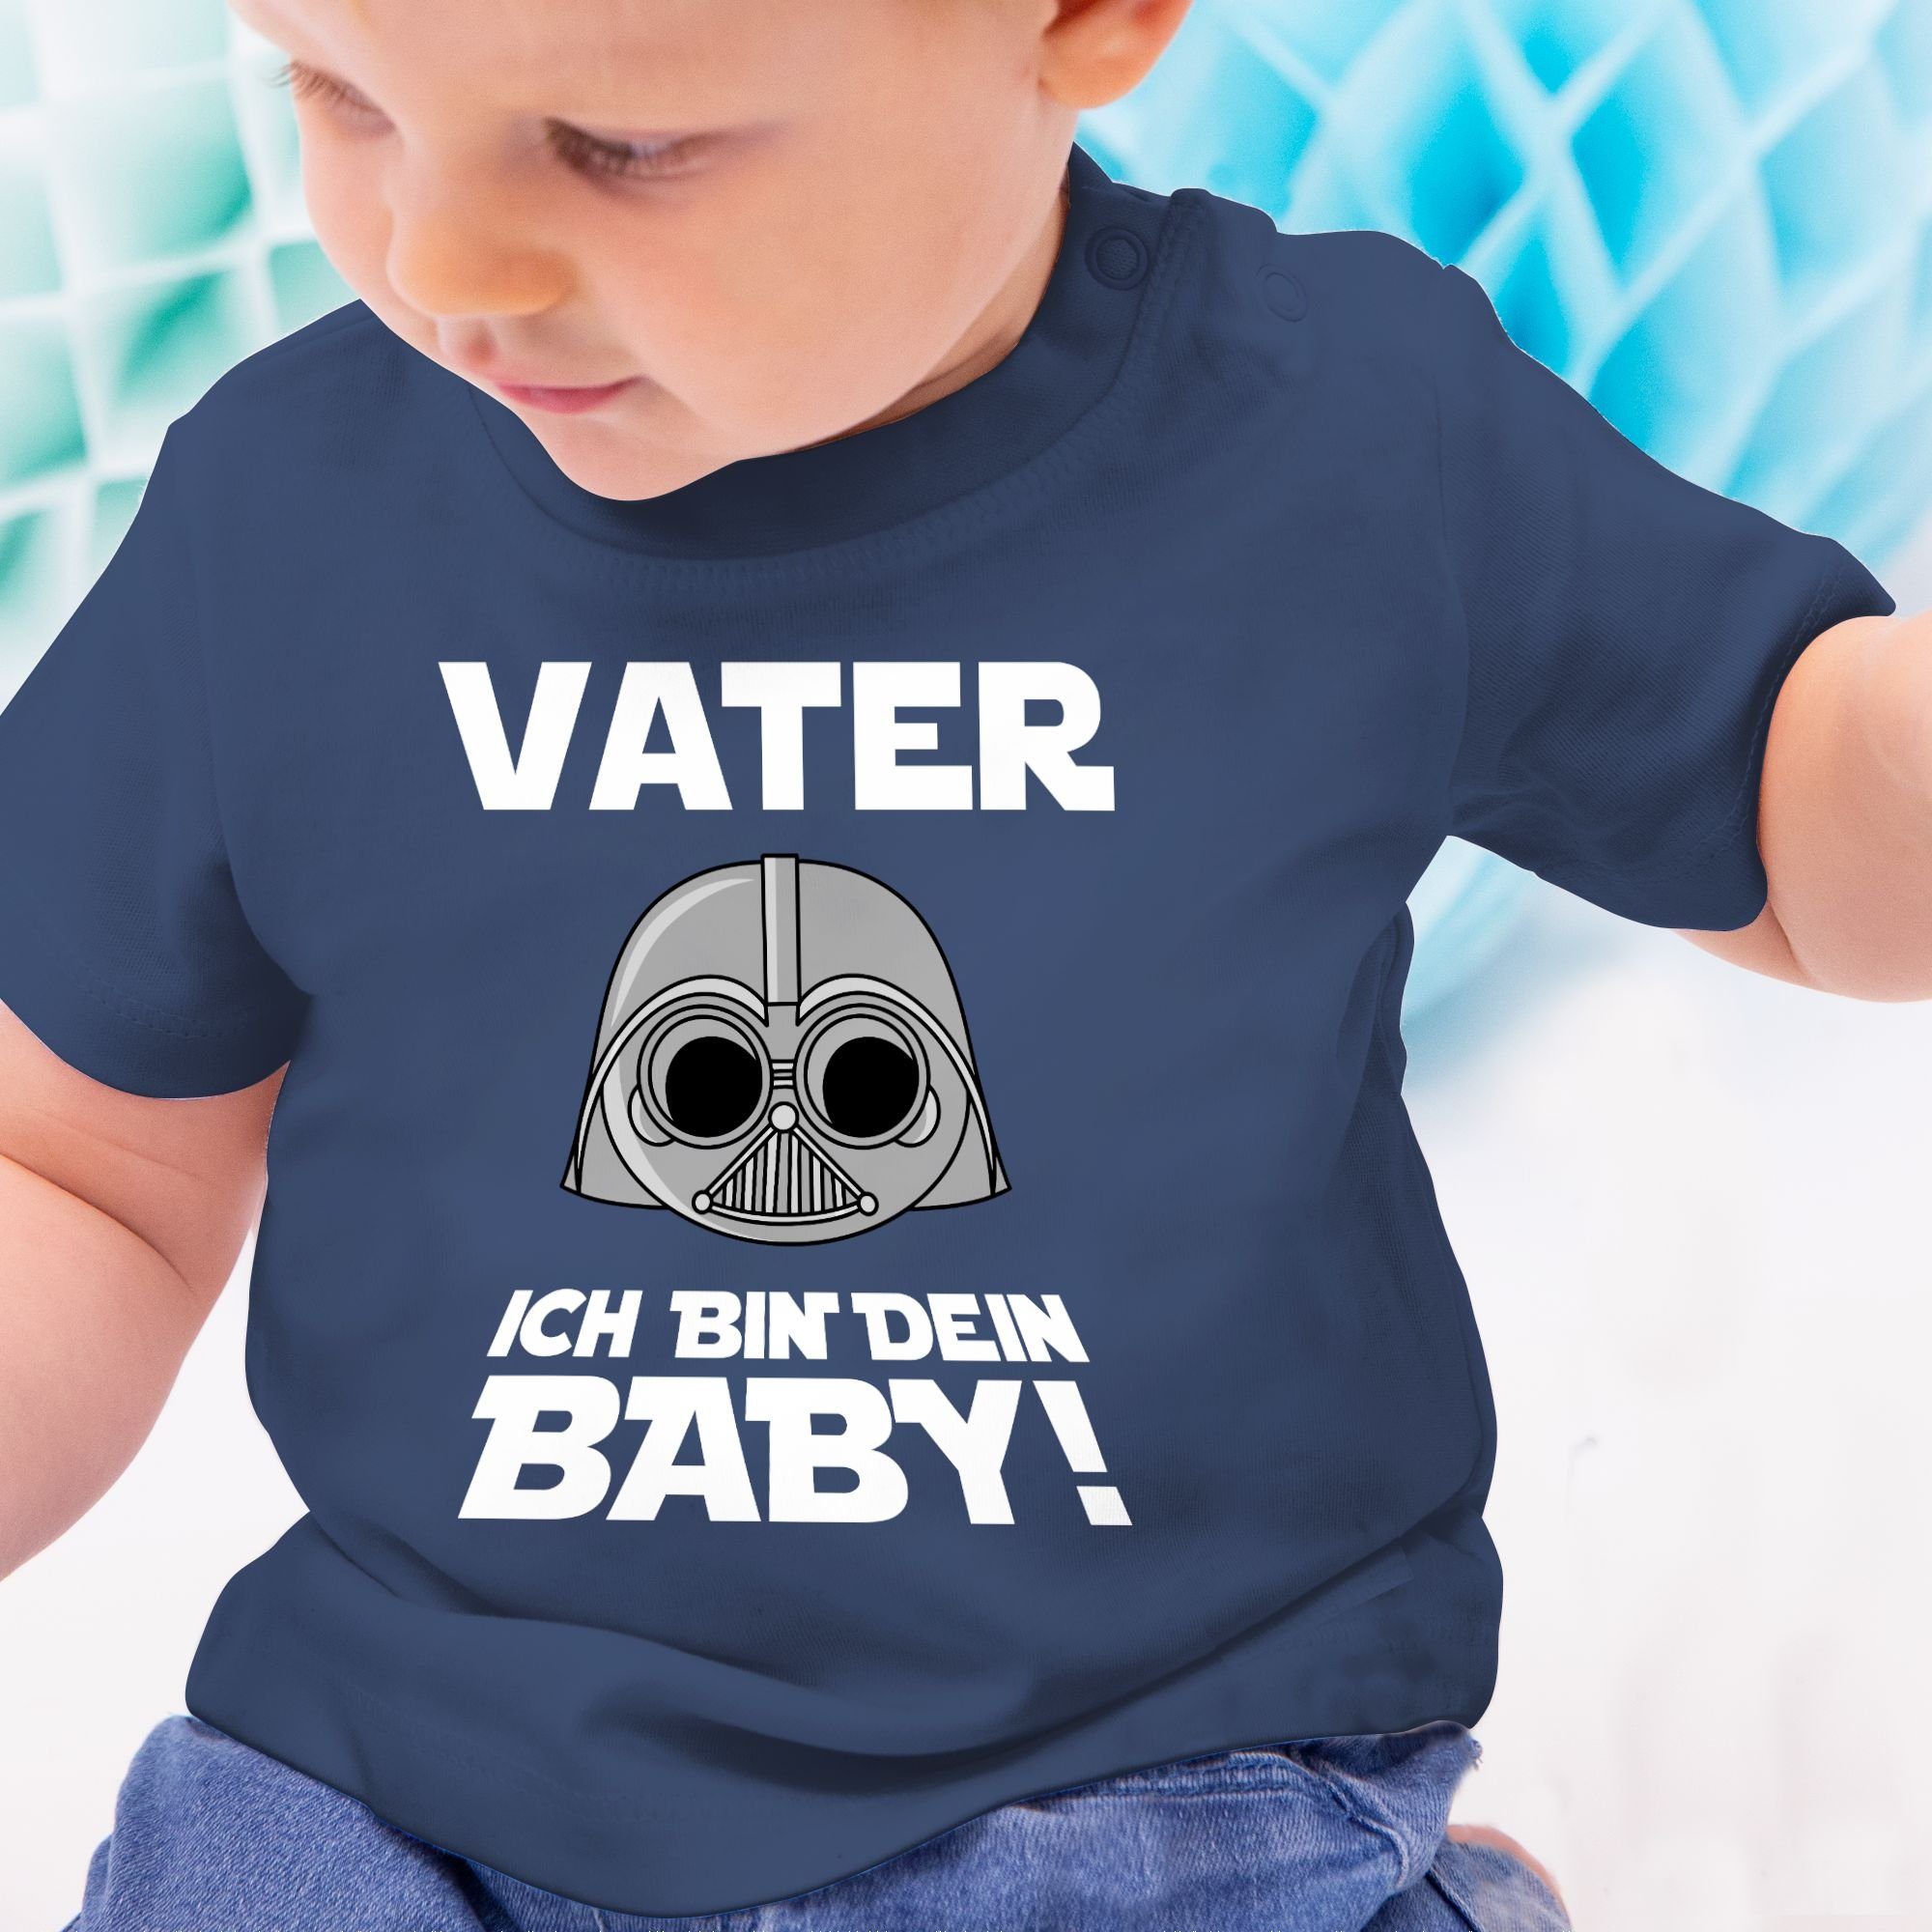 Vater Baby Geschenk Shirtracer Blau Vatertag 2 Navy Baby bin dein T-Shirt ich